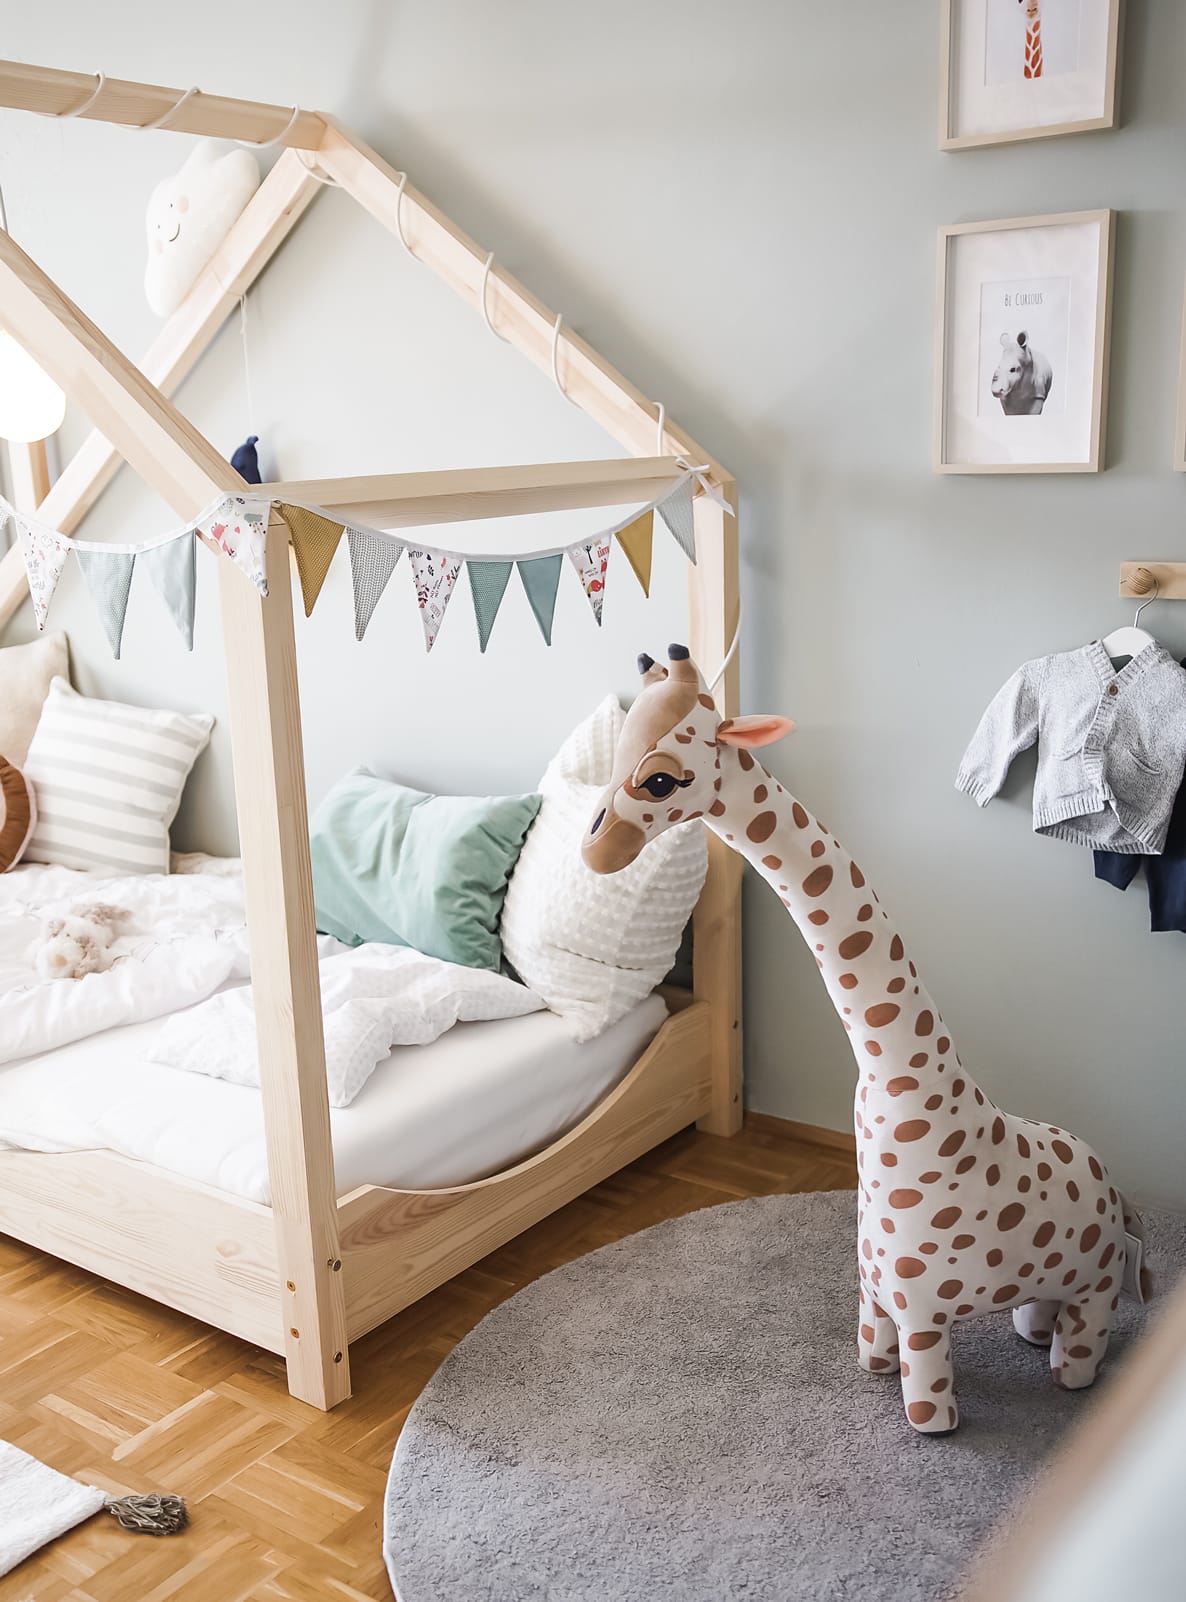 H&M giraff på barnerommet, dyrebilder